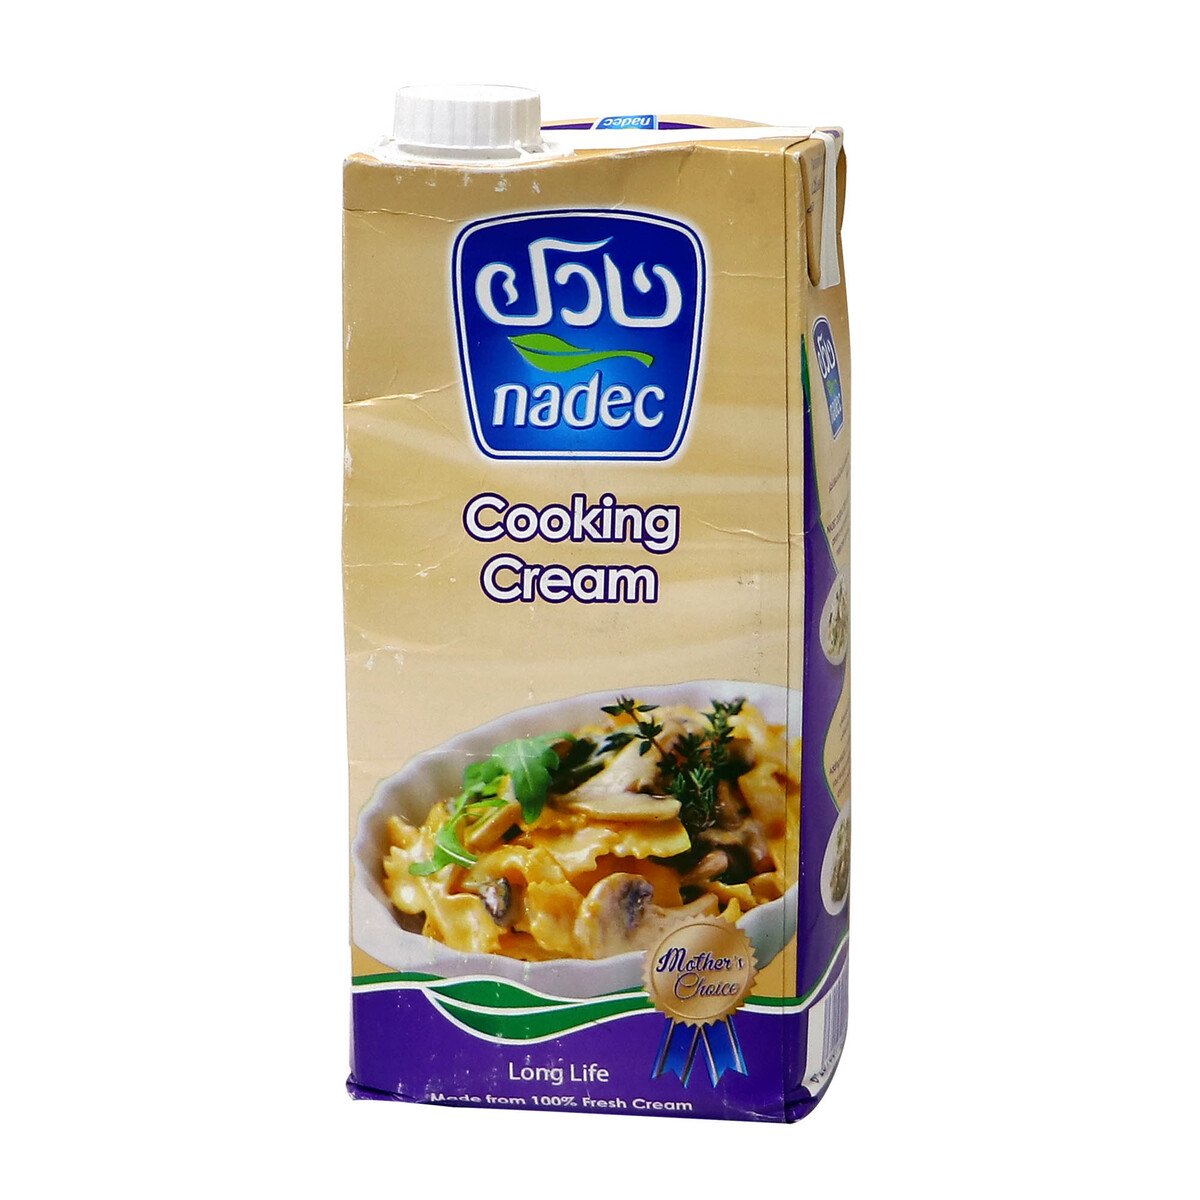 اشتري قم بشراء نادك كريمة الطبخ 1 لتر Online at Best Price من الموقع - من لولو هايبر ماركت Cooking Cream في السعودية